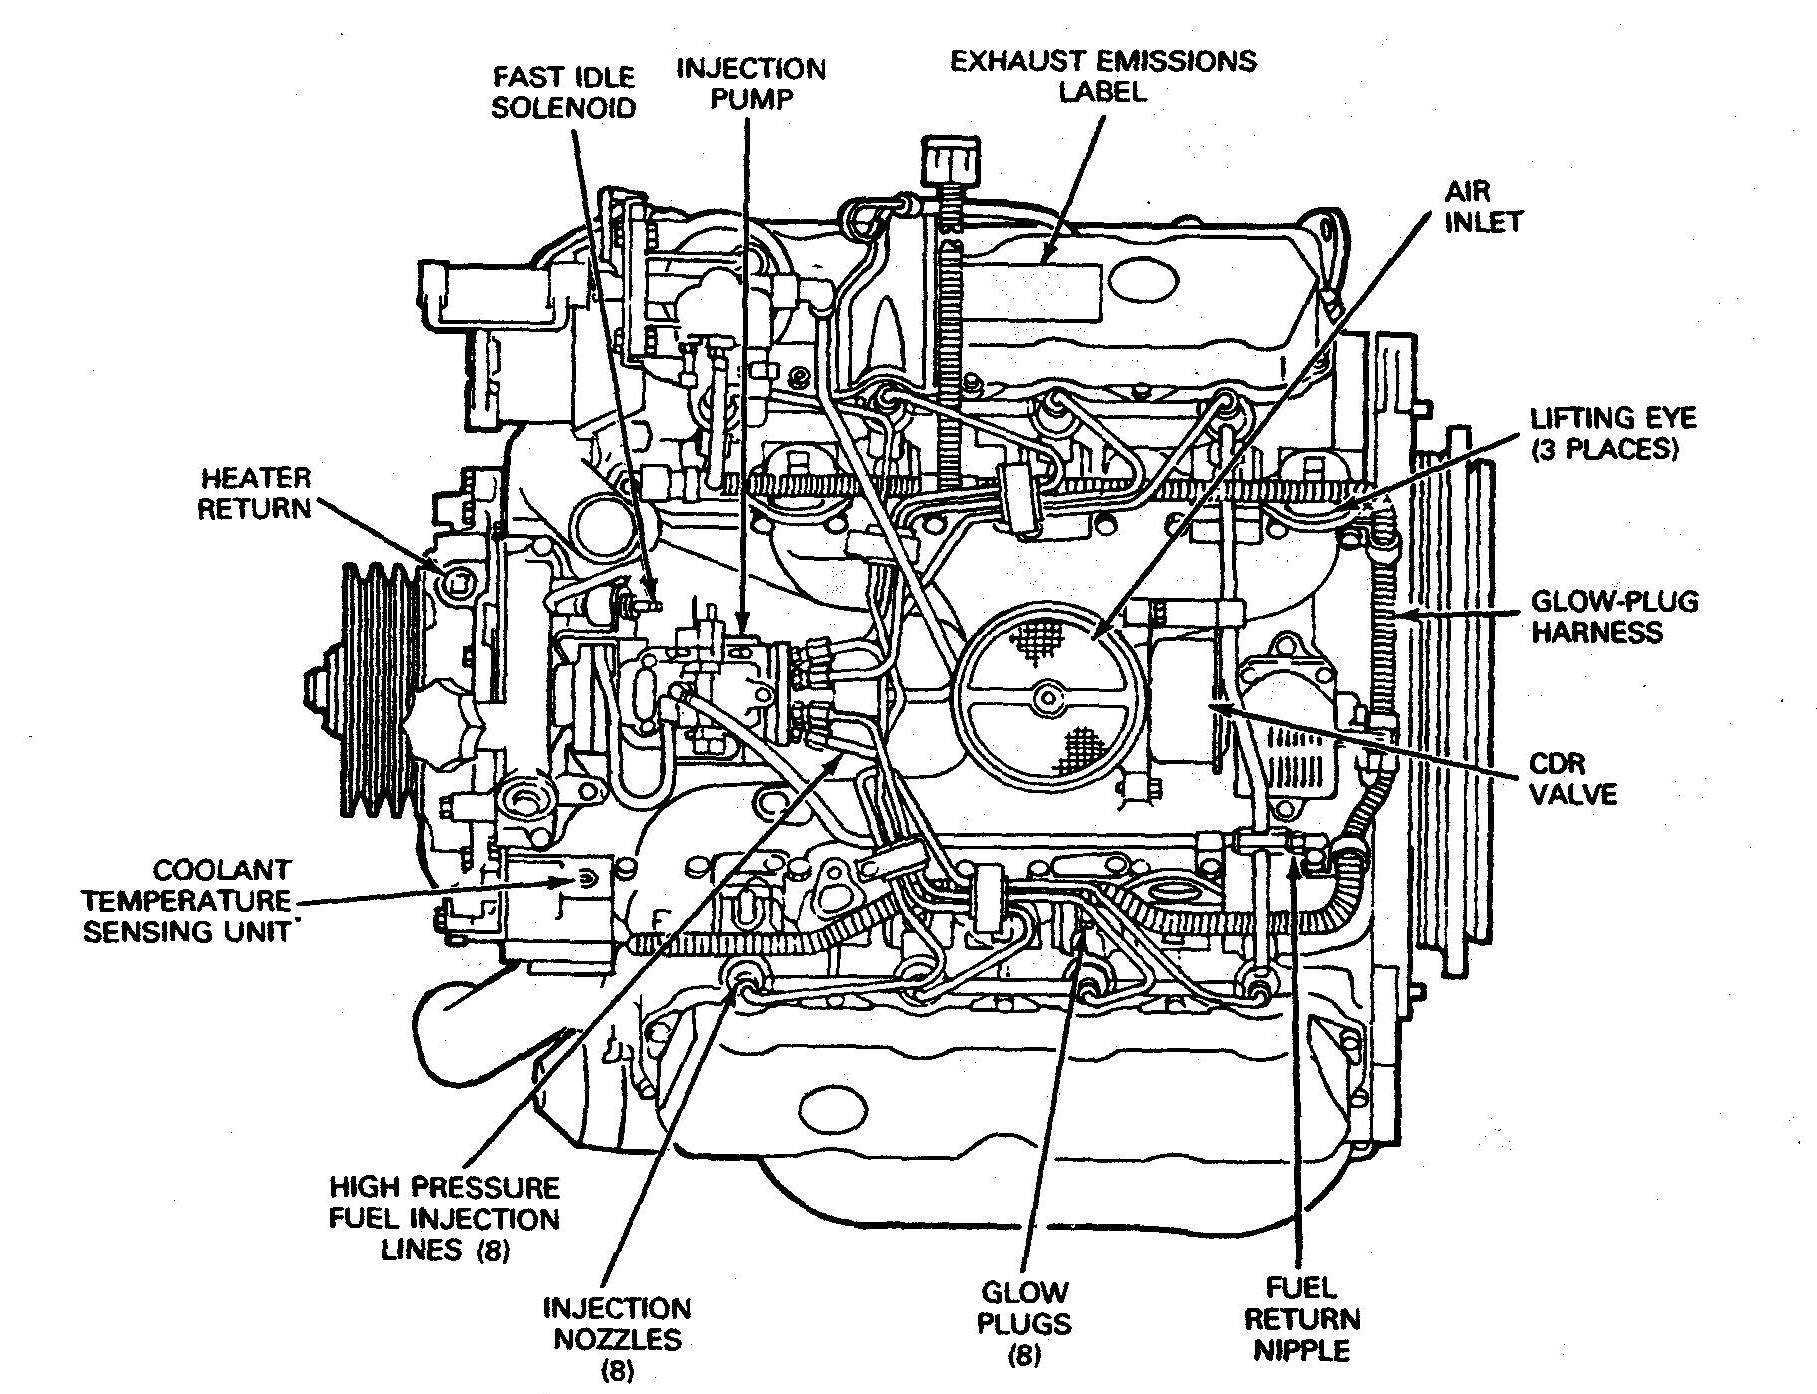 V6 Engine Diagram ford V6 3 7 Engine Diagram ford Wiring Diagrams Instructions Of V6 Engine Diagram